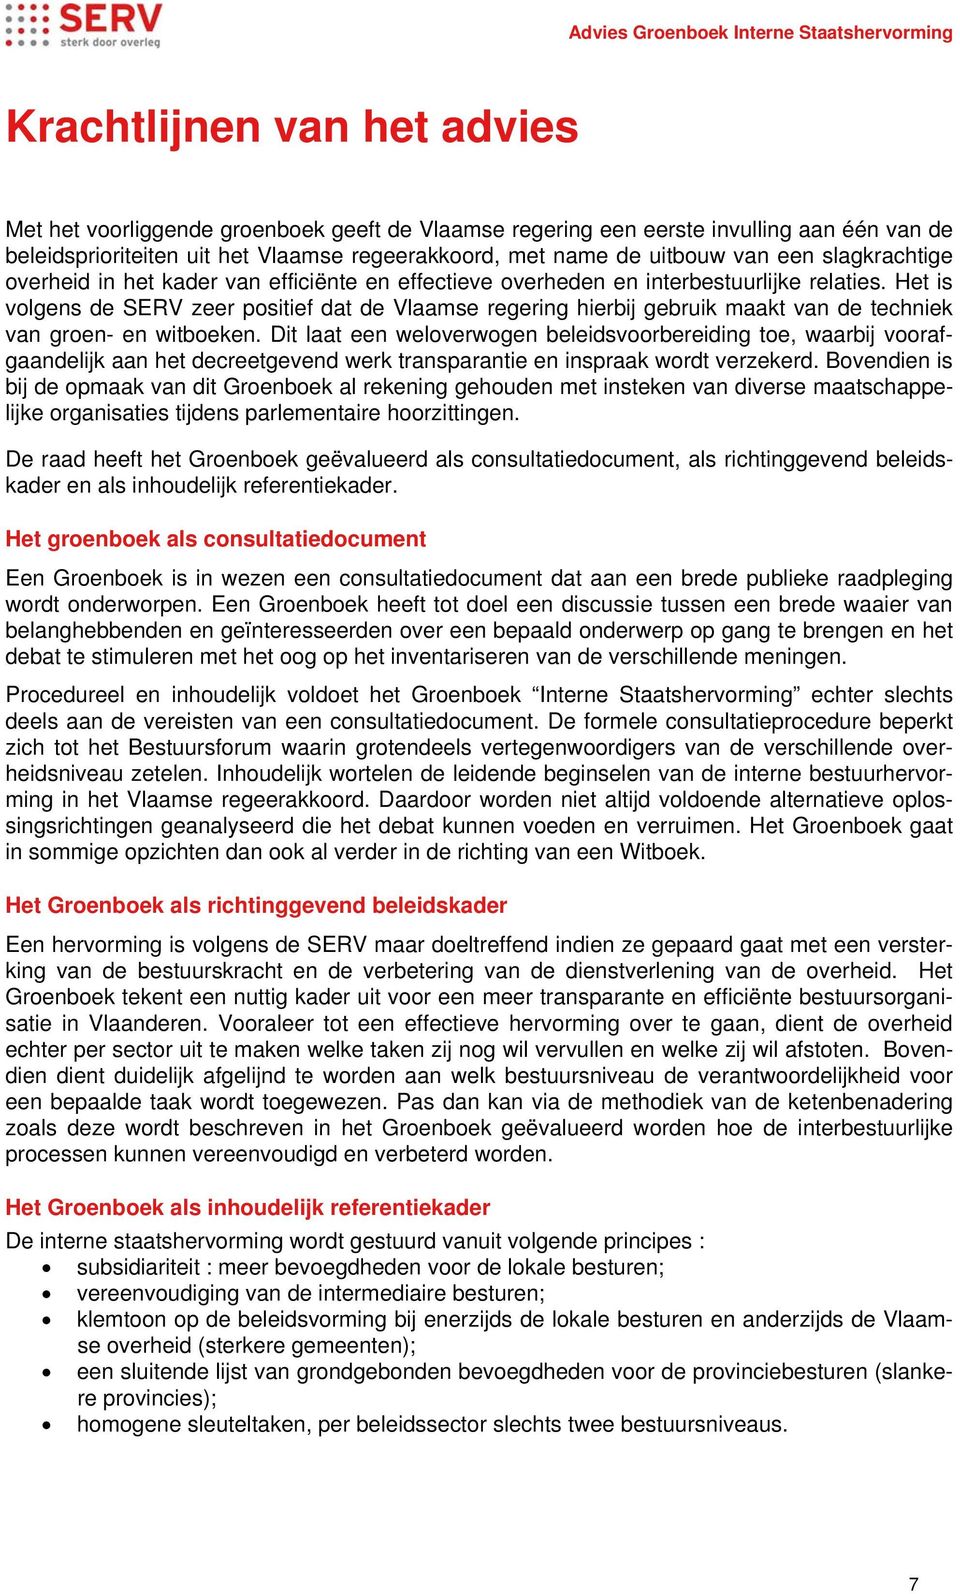 Het is volgens de SERV zeer positief dat de Vlaamse regering hierbij gebruik maakt van de techniek van groen- en witboeken.